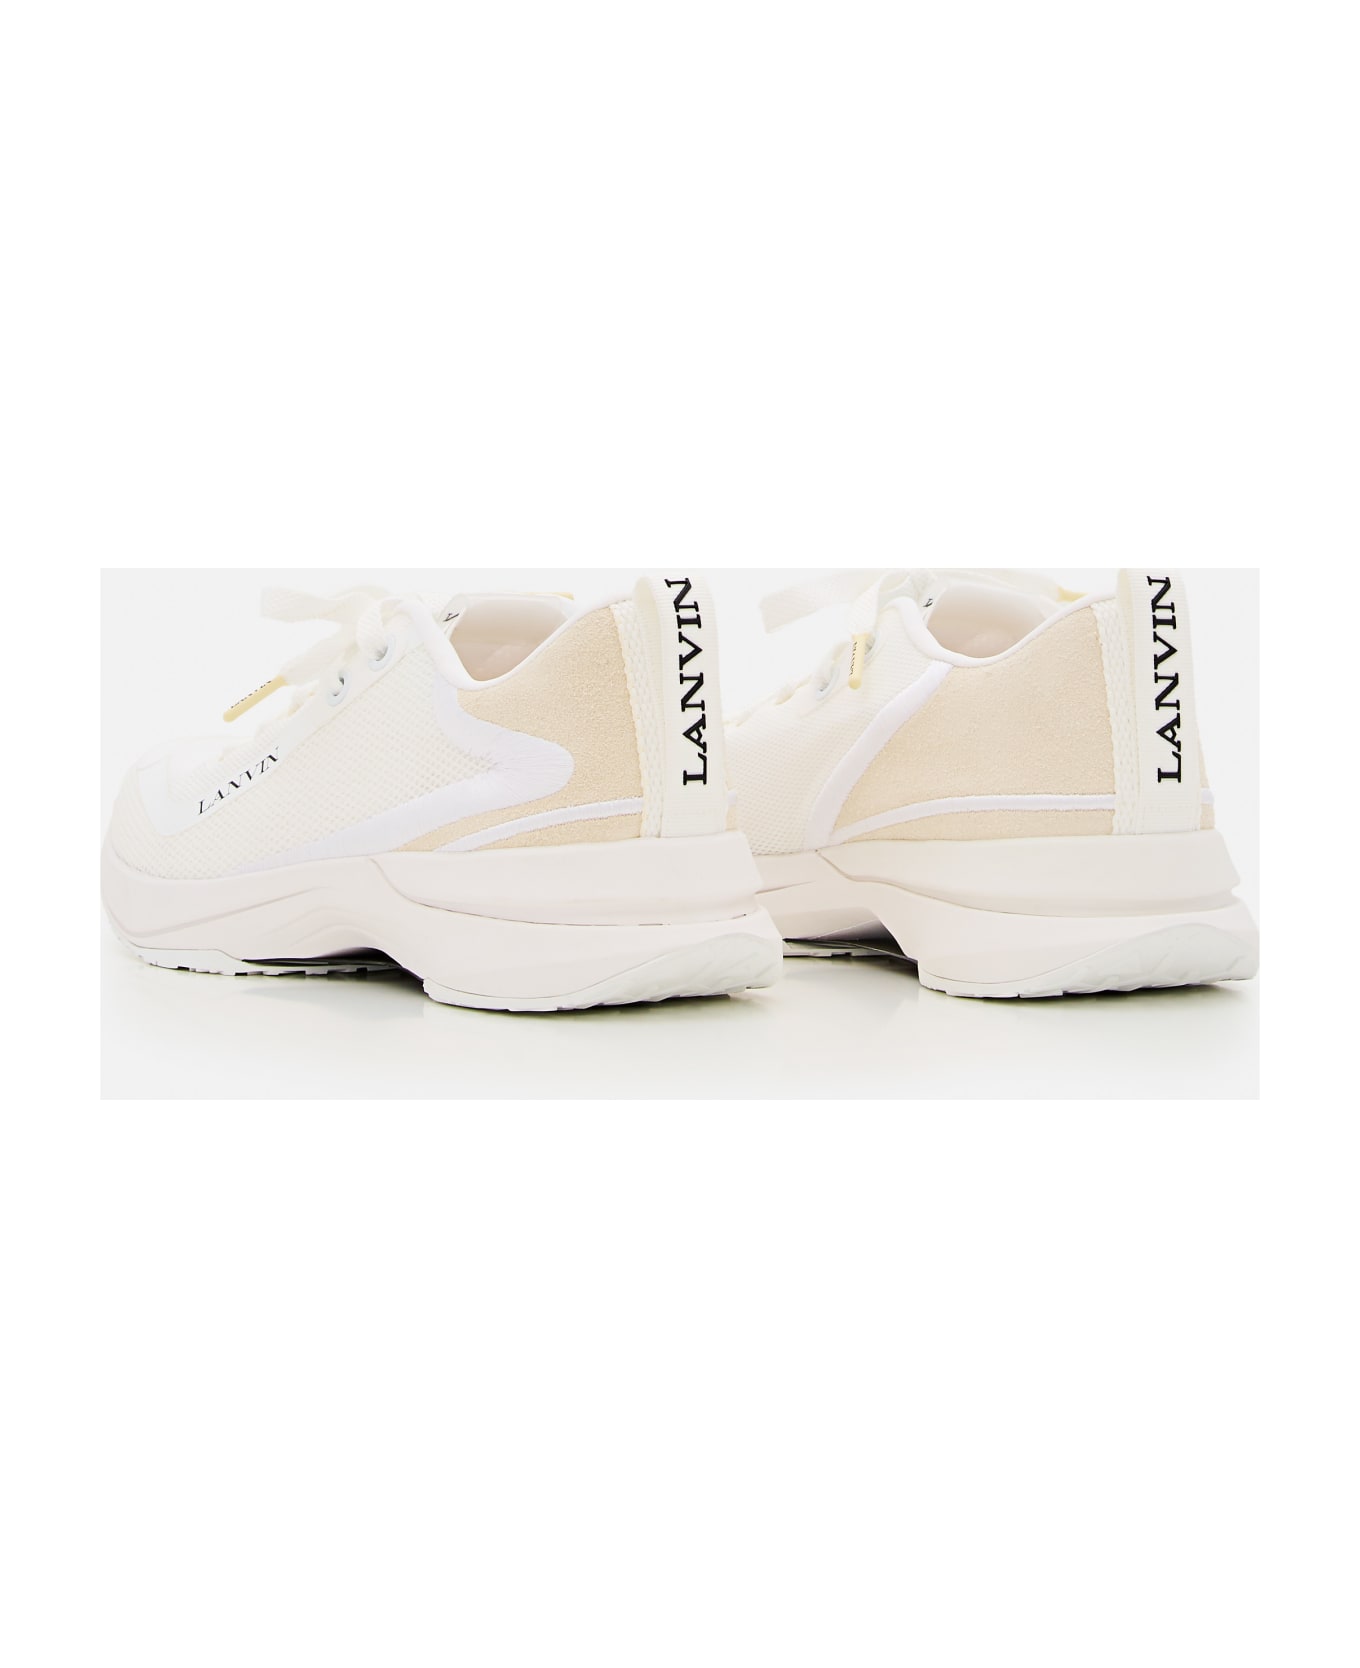 Lanvin Runner Sneakers - White